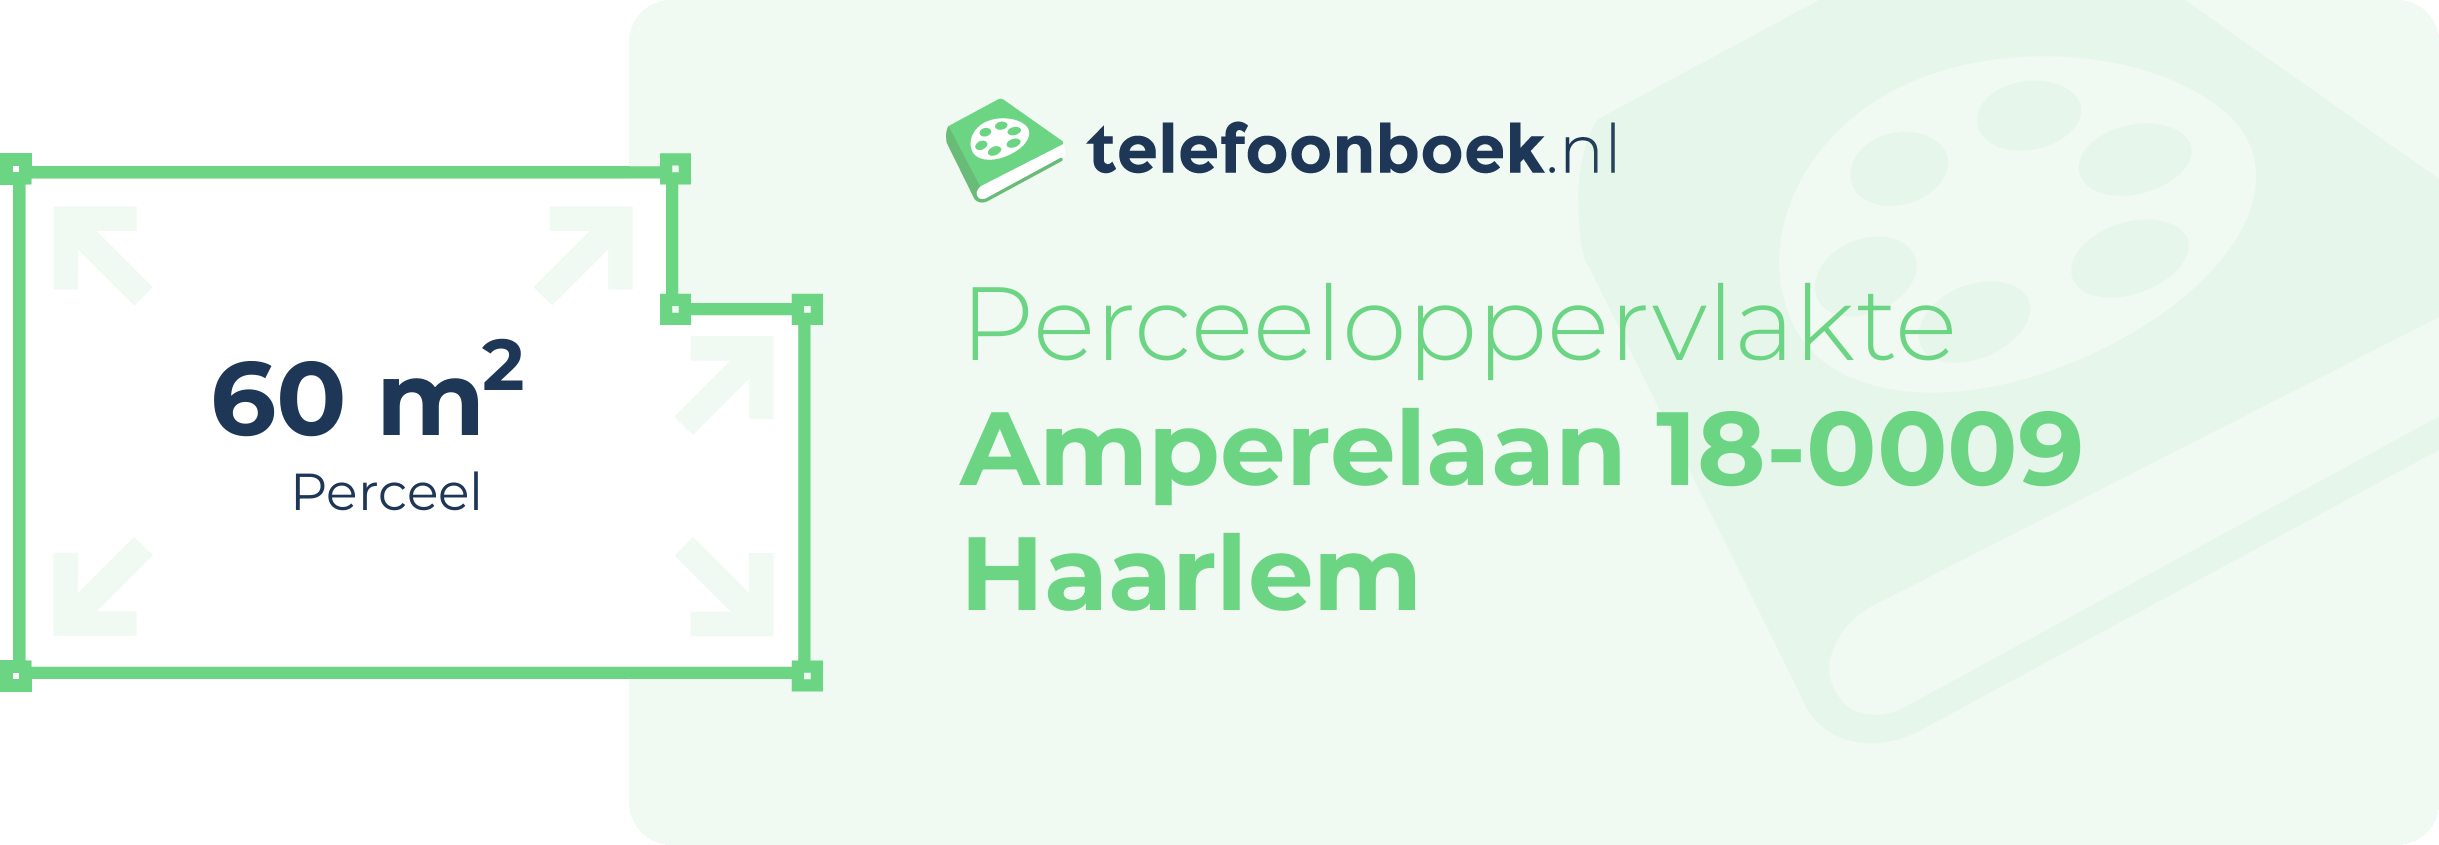 Perceeloppervlakte Amperelaan 18-0009 Haarlem